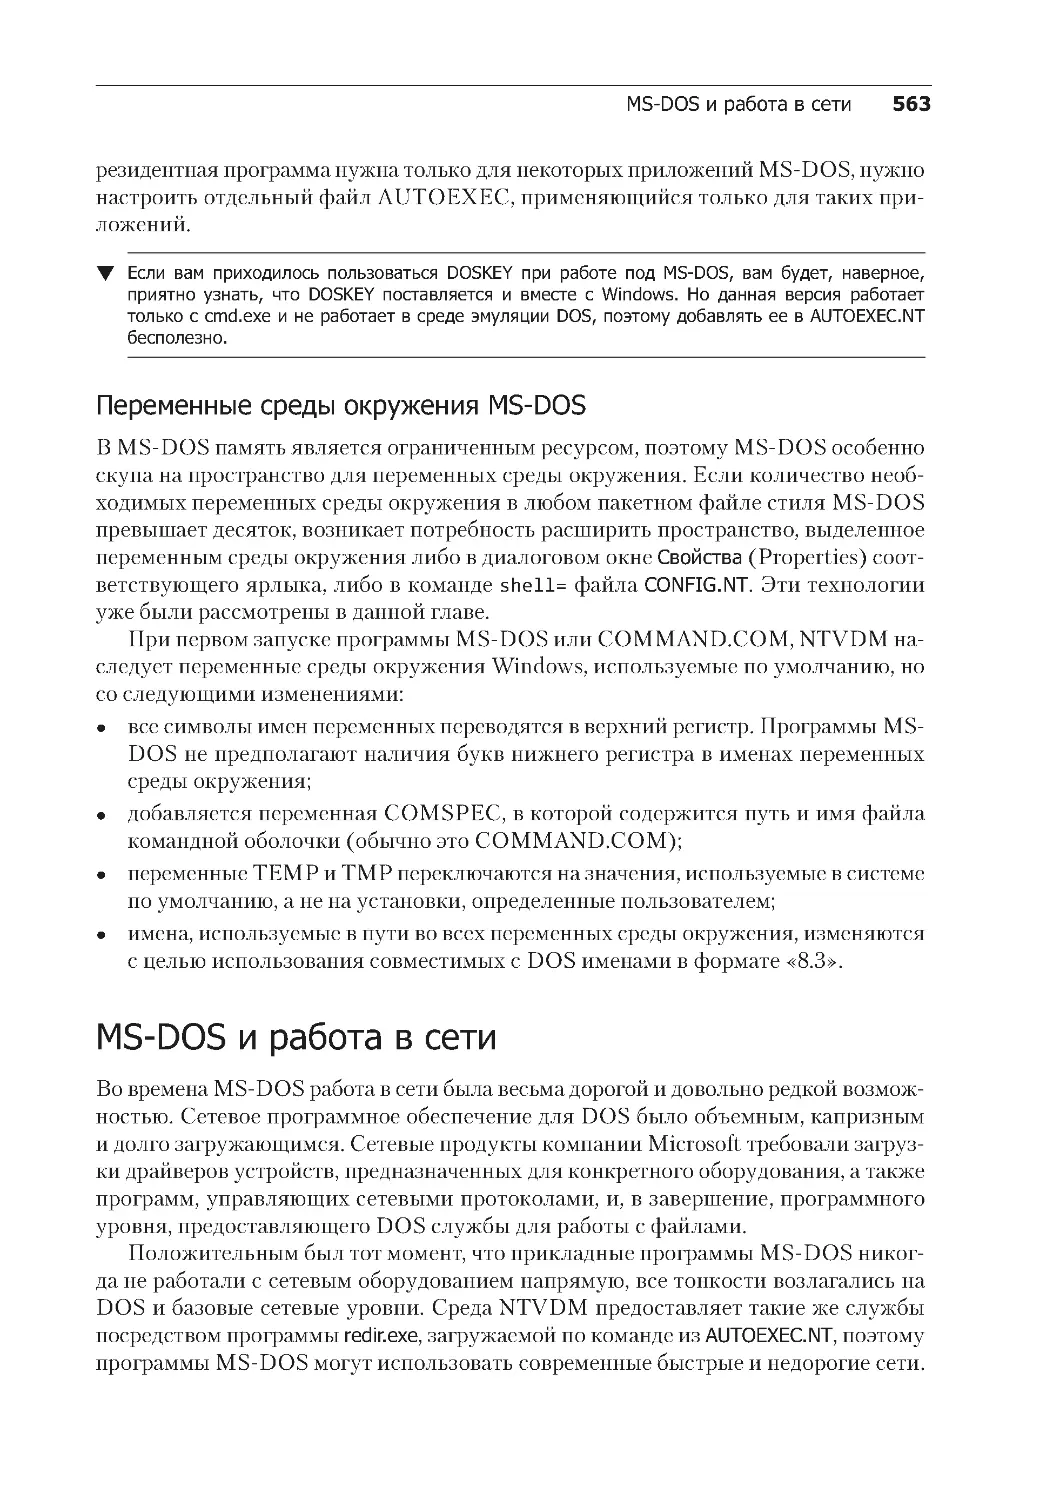 Переменные среды окружения MS-DOS
MS-DOS и работа в сети